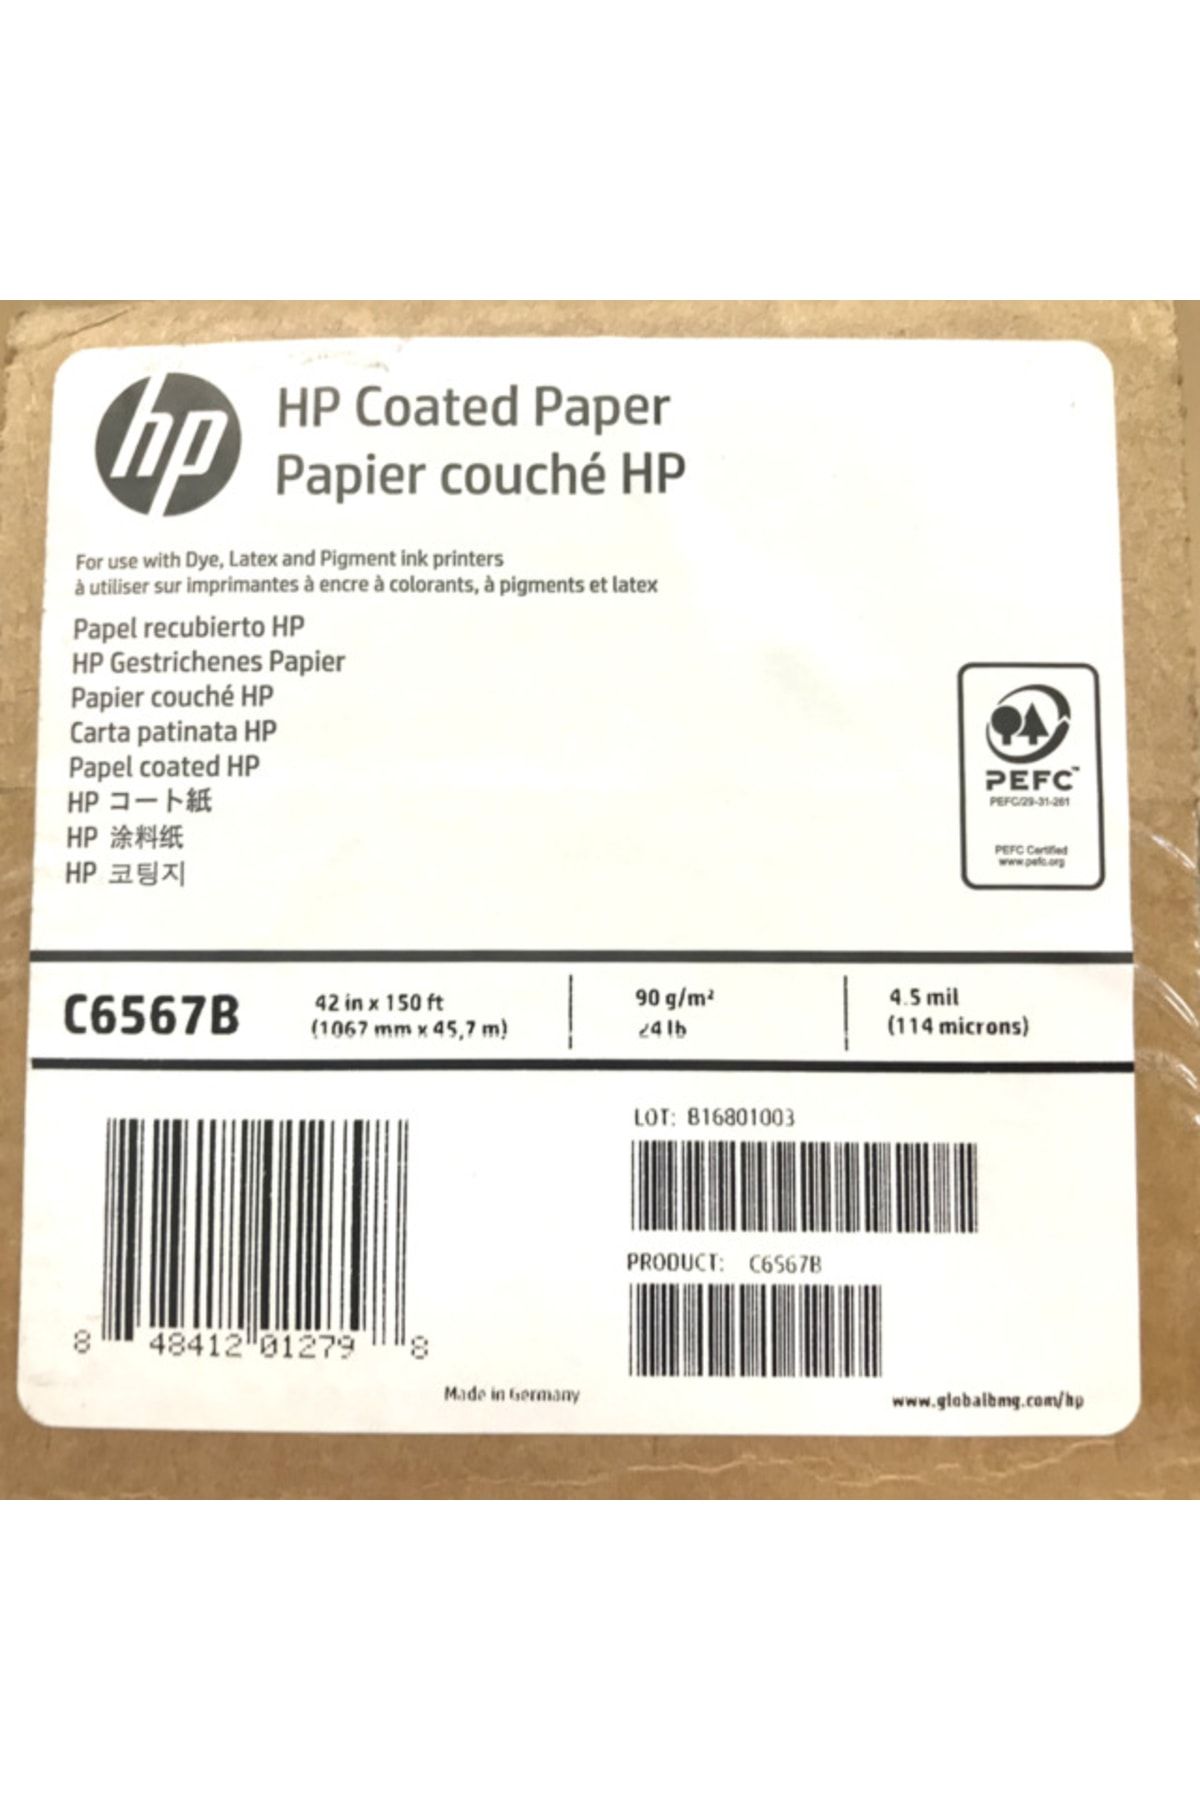 HP C6567b Coated Paper 1067mmx45.7m